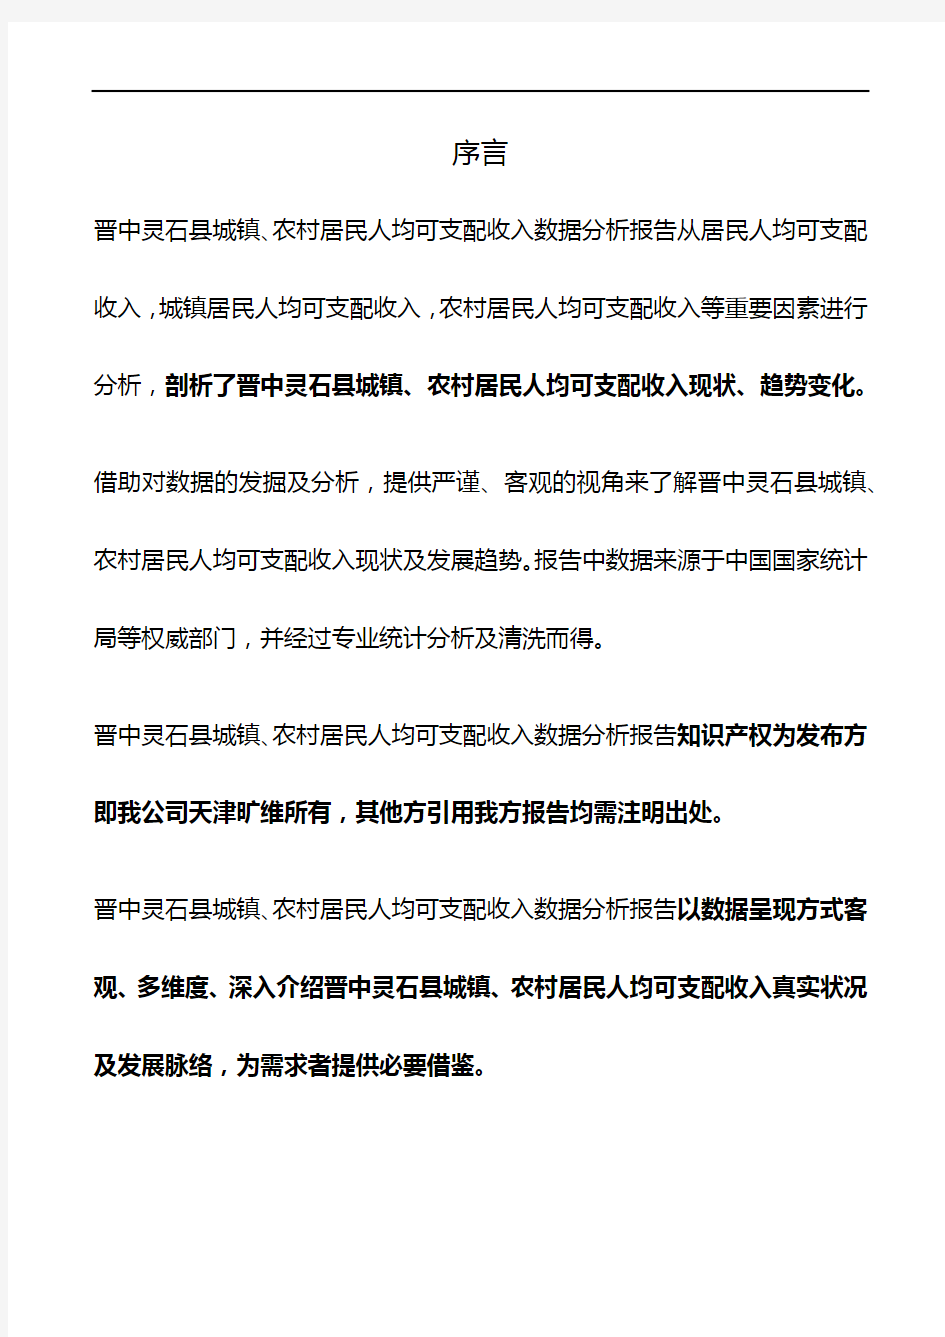 山西省晋中灵石县城镇、农村居民人均可支配收入3年数据分析报告2020版